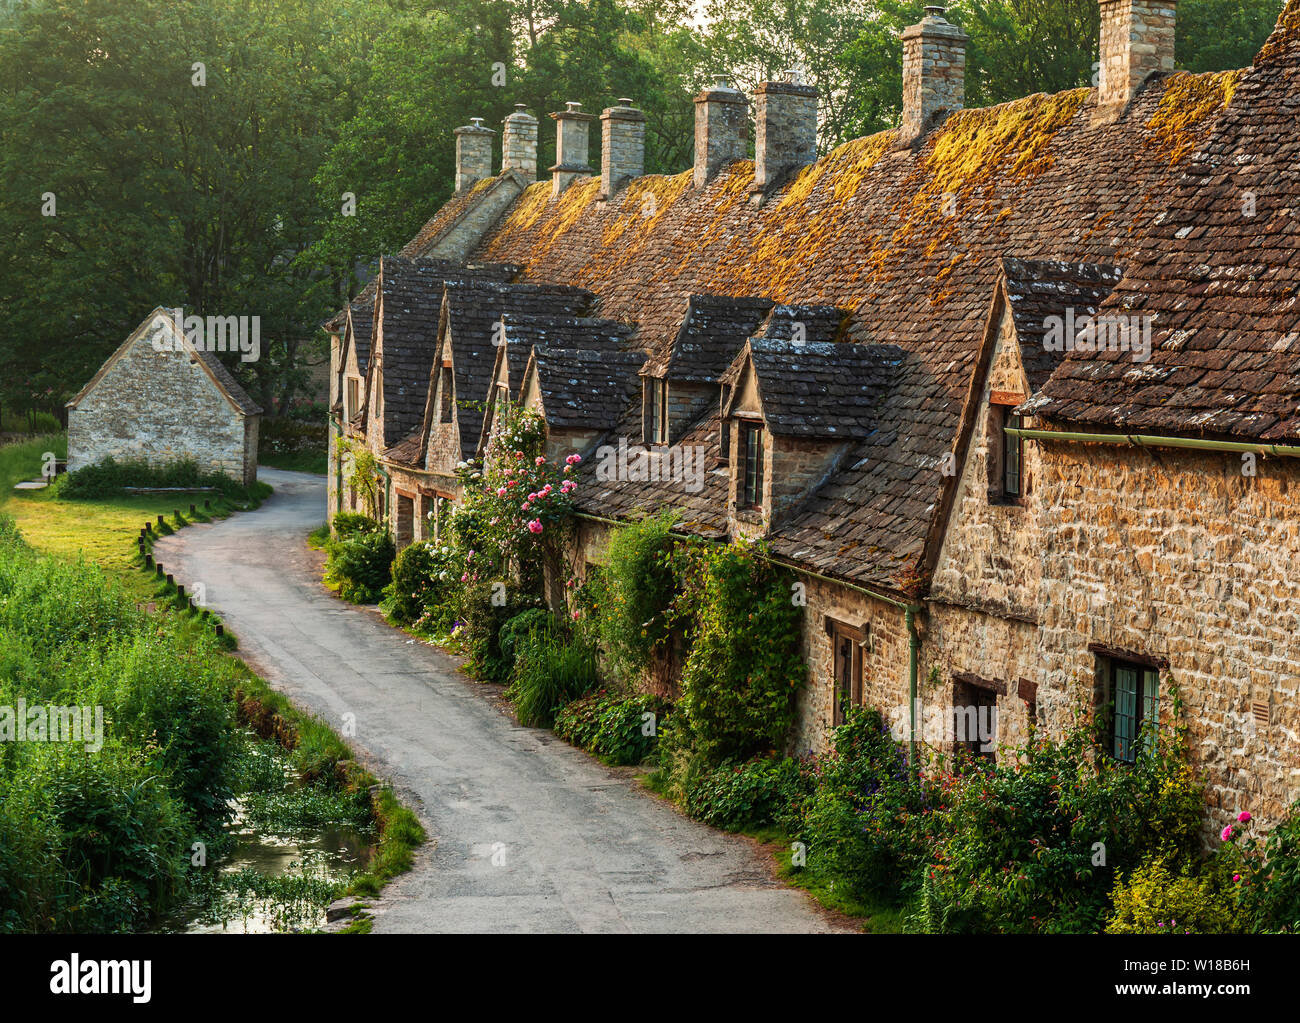 Row of 600 year old English Cotswolds stone cottages. Arlington Row, Bibury, Gloucestershire, England, UK. Stock Photo